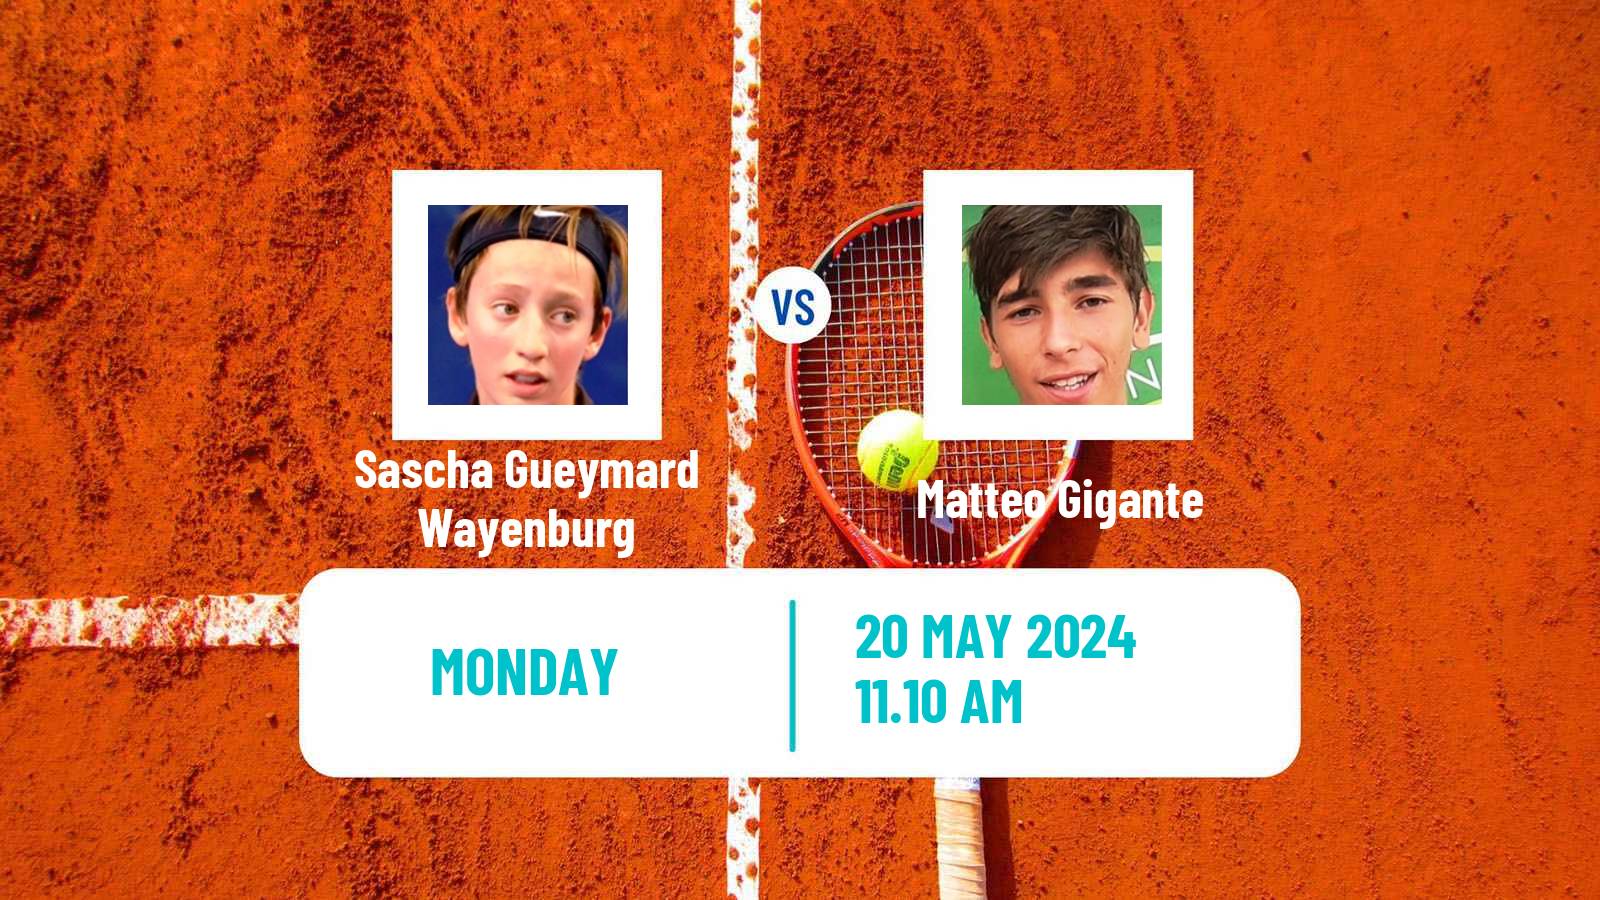 Tennis ATP Roland Garros Sascha Gueymard Wayenburg - Matteo Gigante